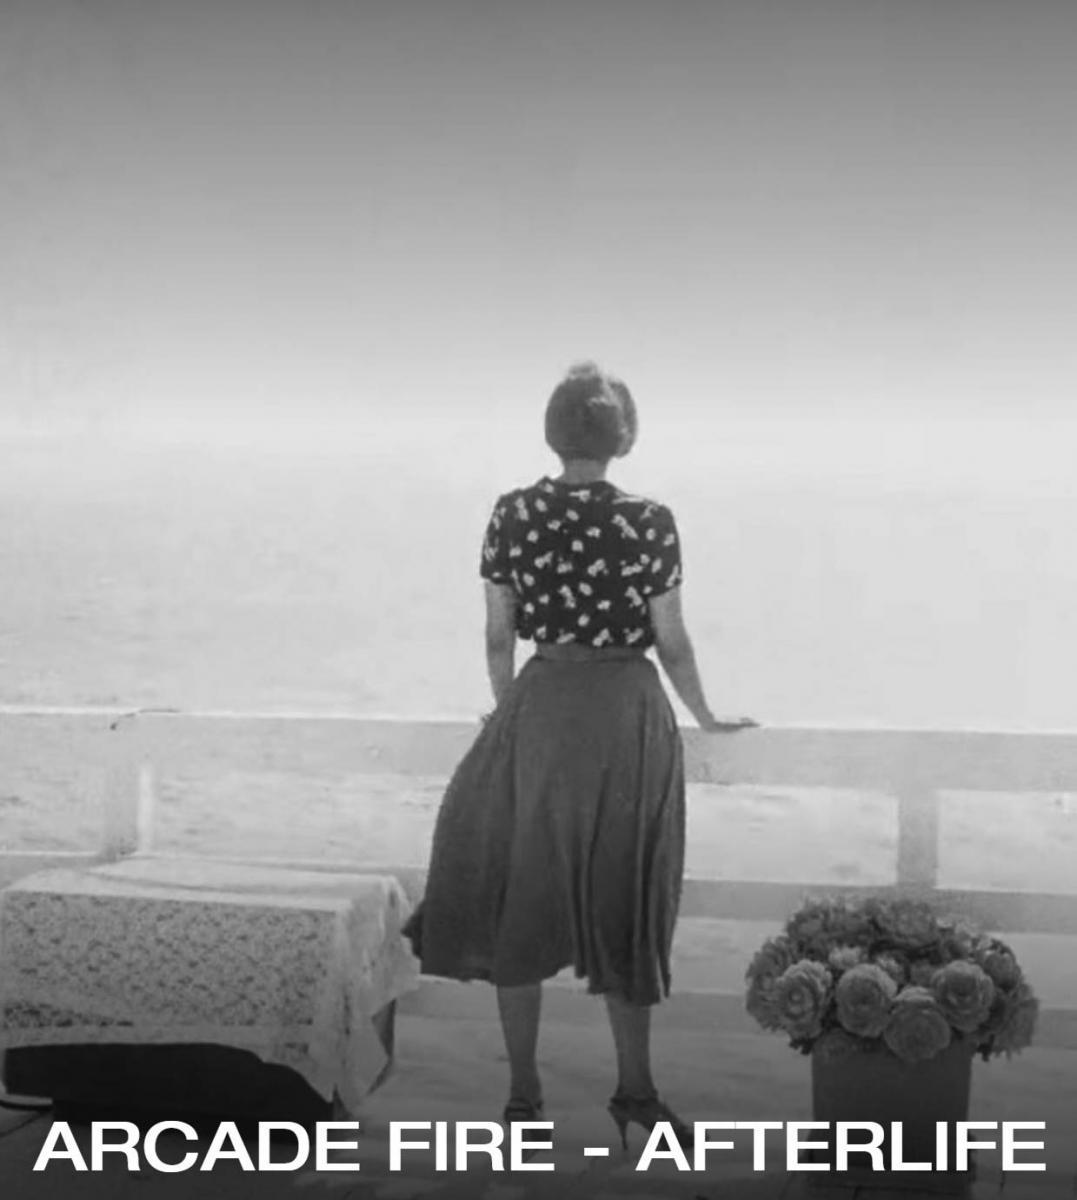 Listen: Arcade Fire: Afterlife